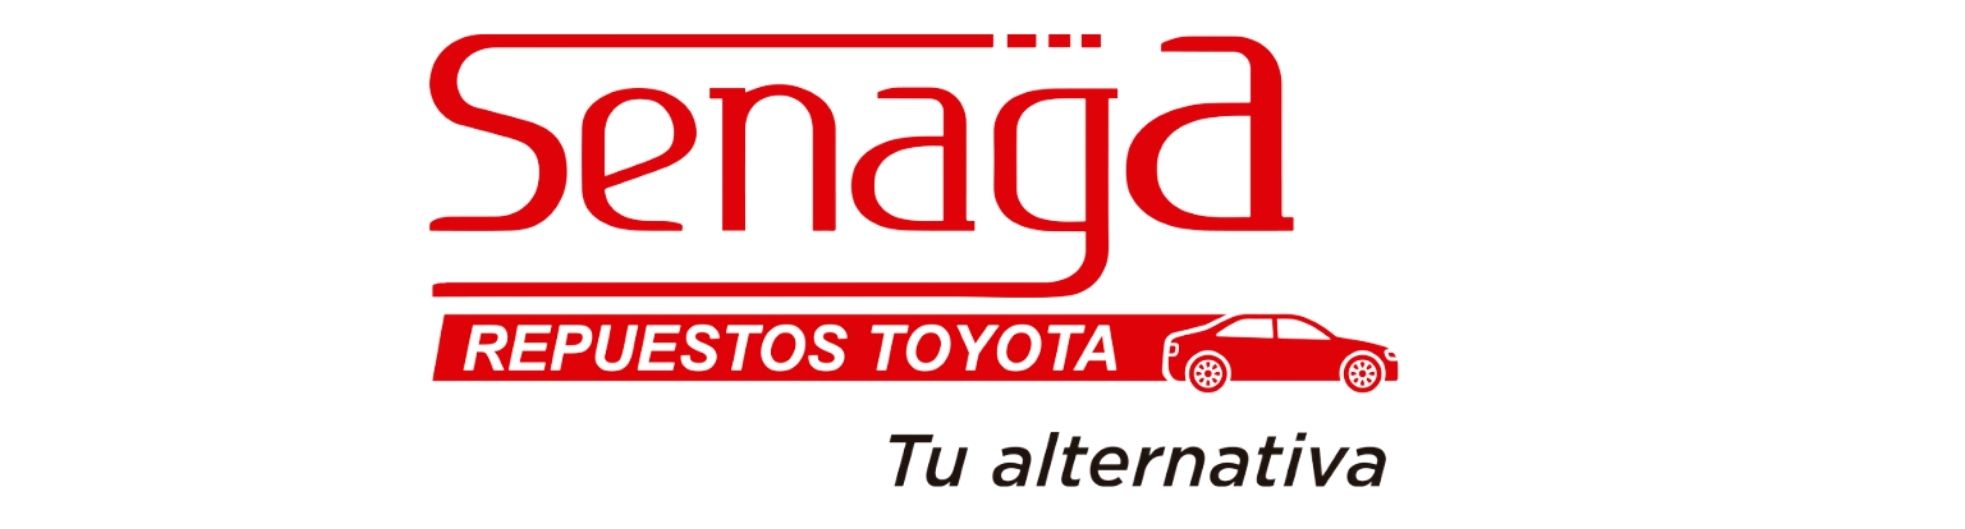 SENAGA repuestos Toyota